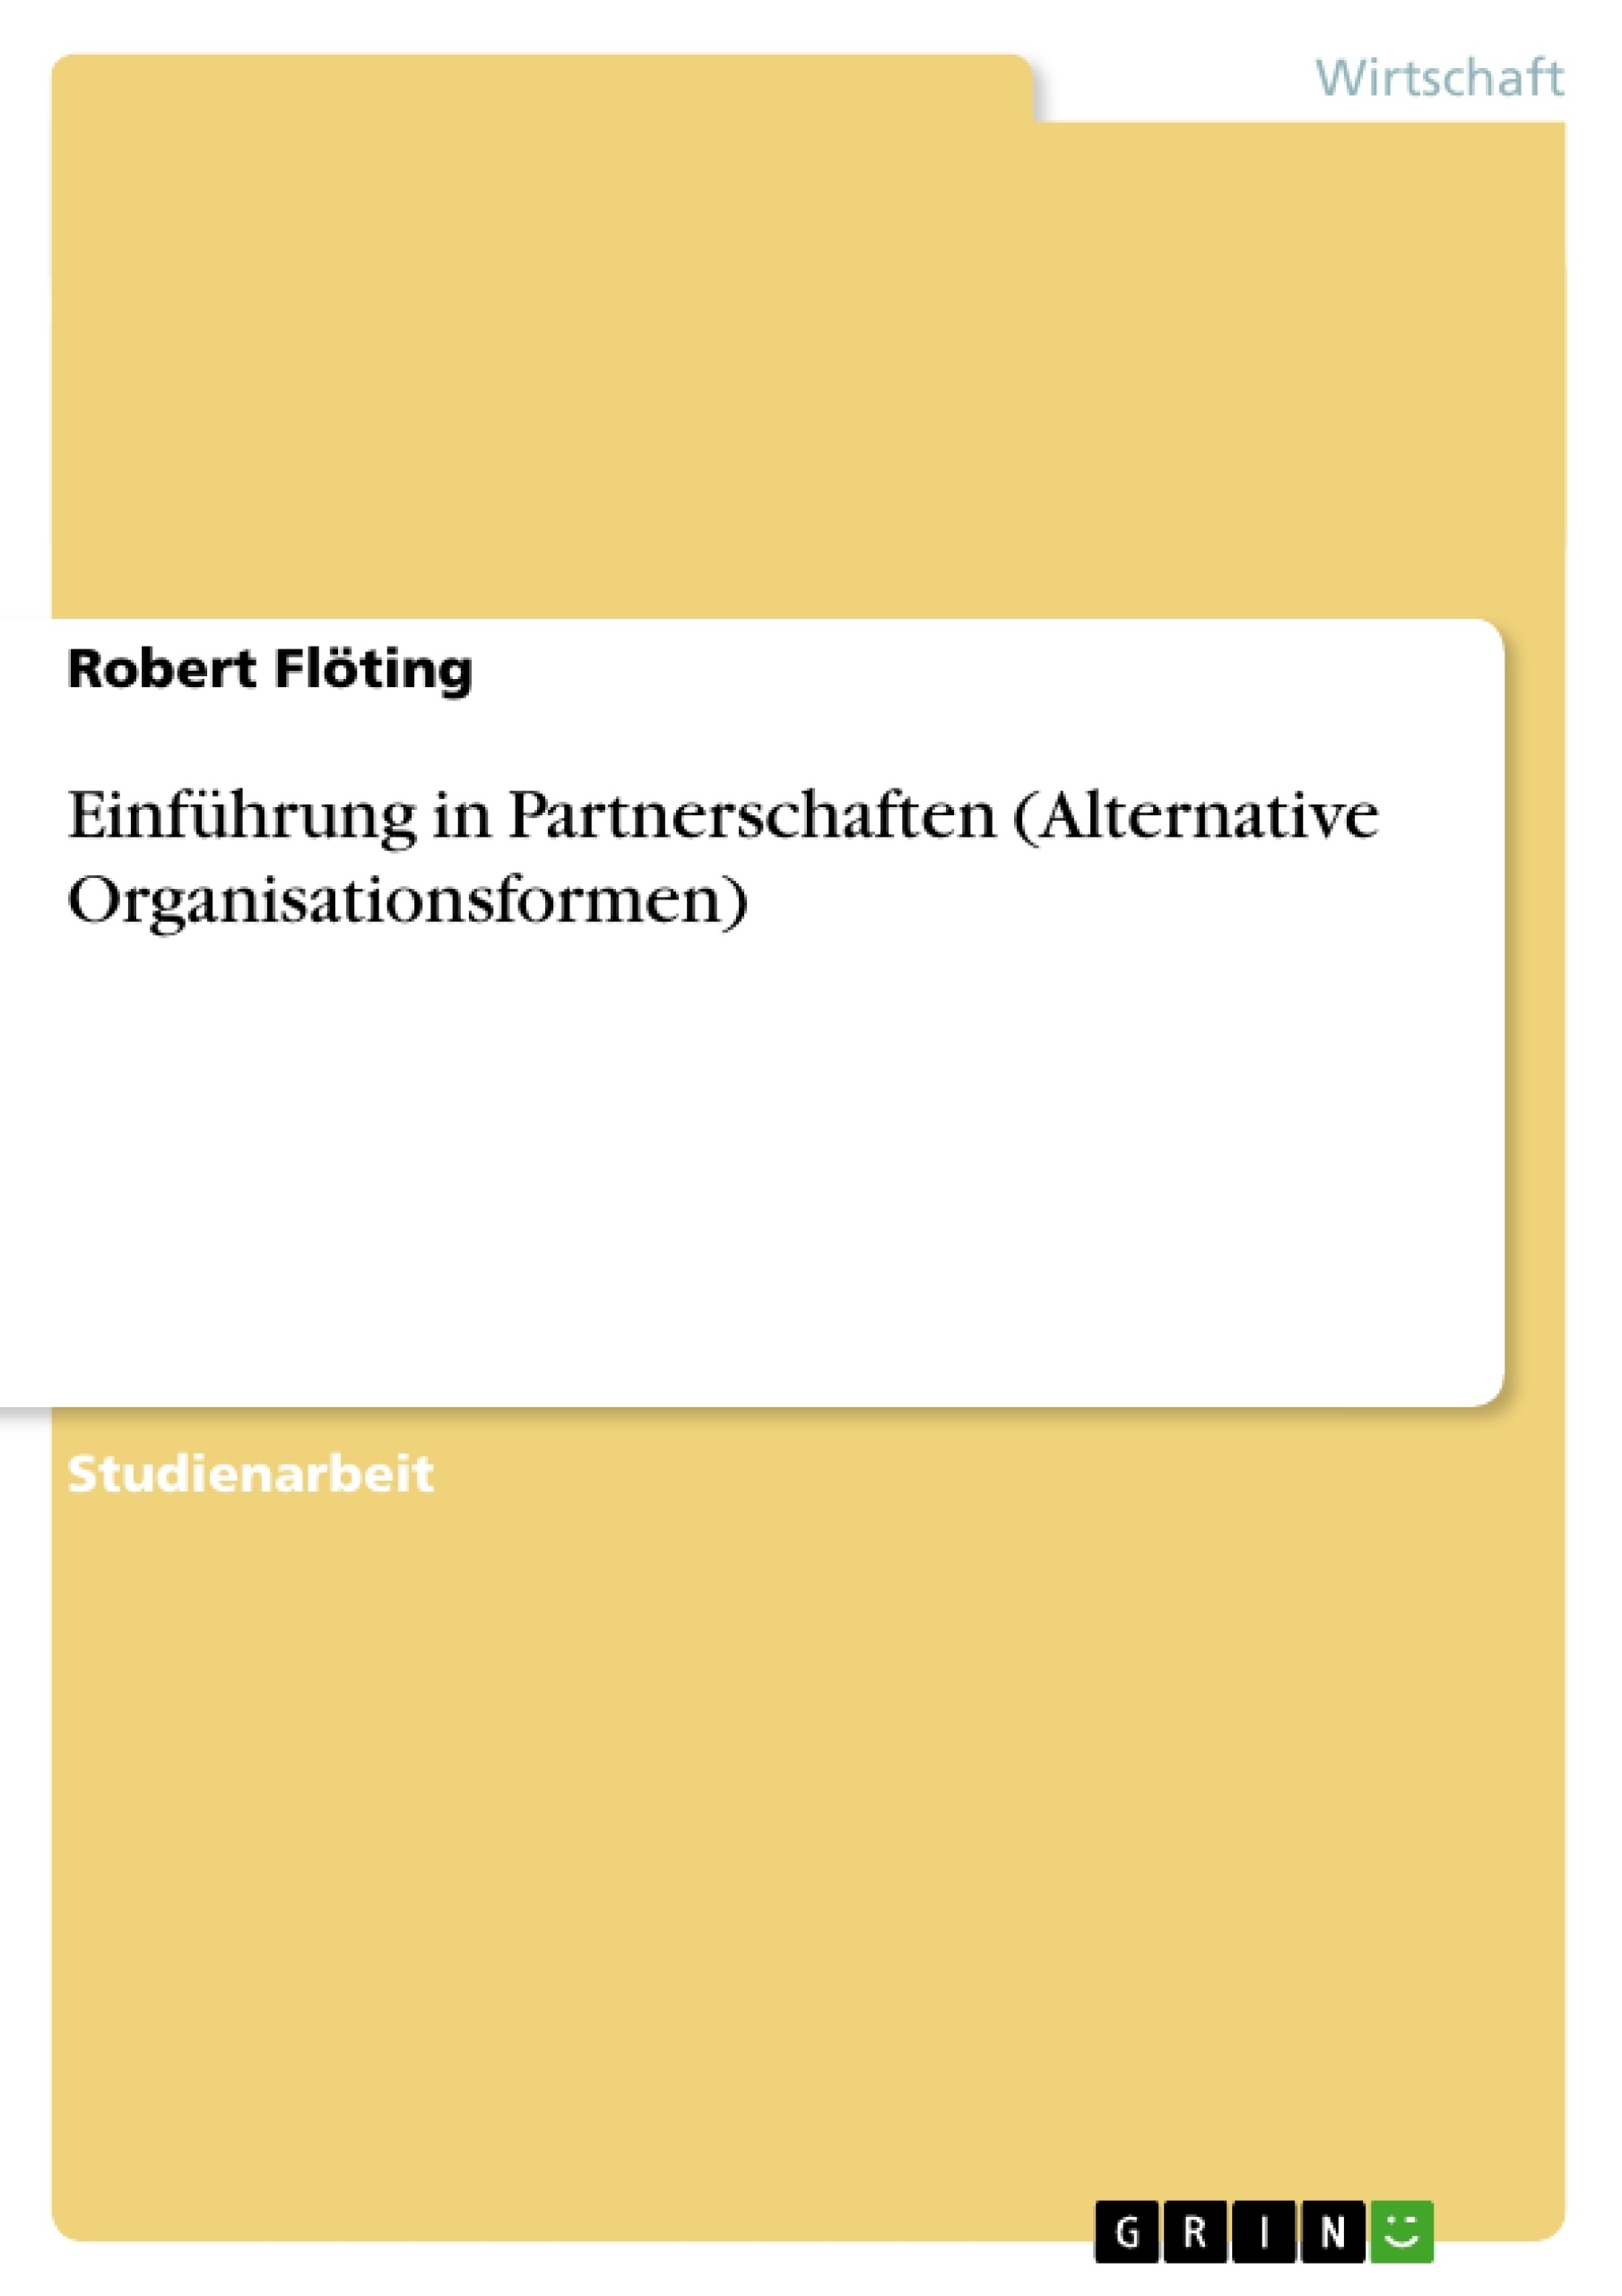 Title: Einführung in Partnerschaften (Alternative Organisationsformen)